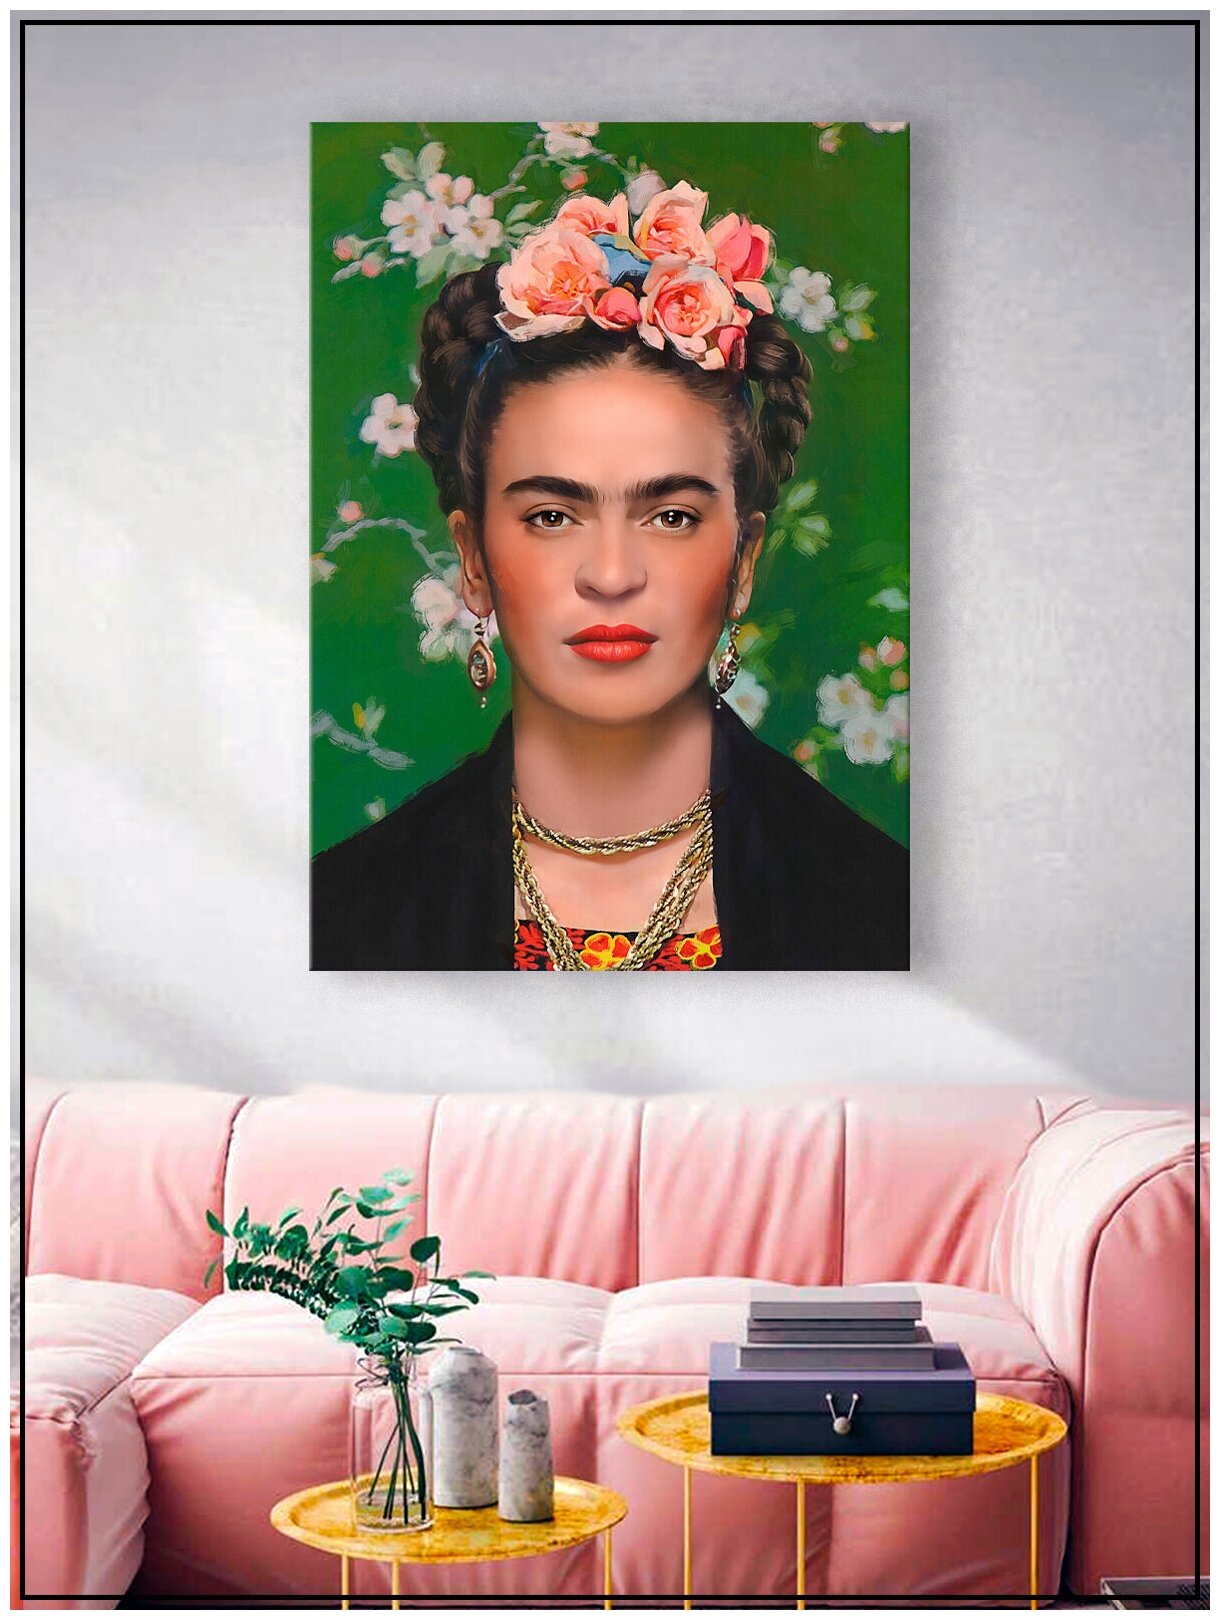 Картина для интерьера на натуральном хлопковом холсте "Фрида Кало", 55*77см, холст на подрамнике, картина в подарок для дома